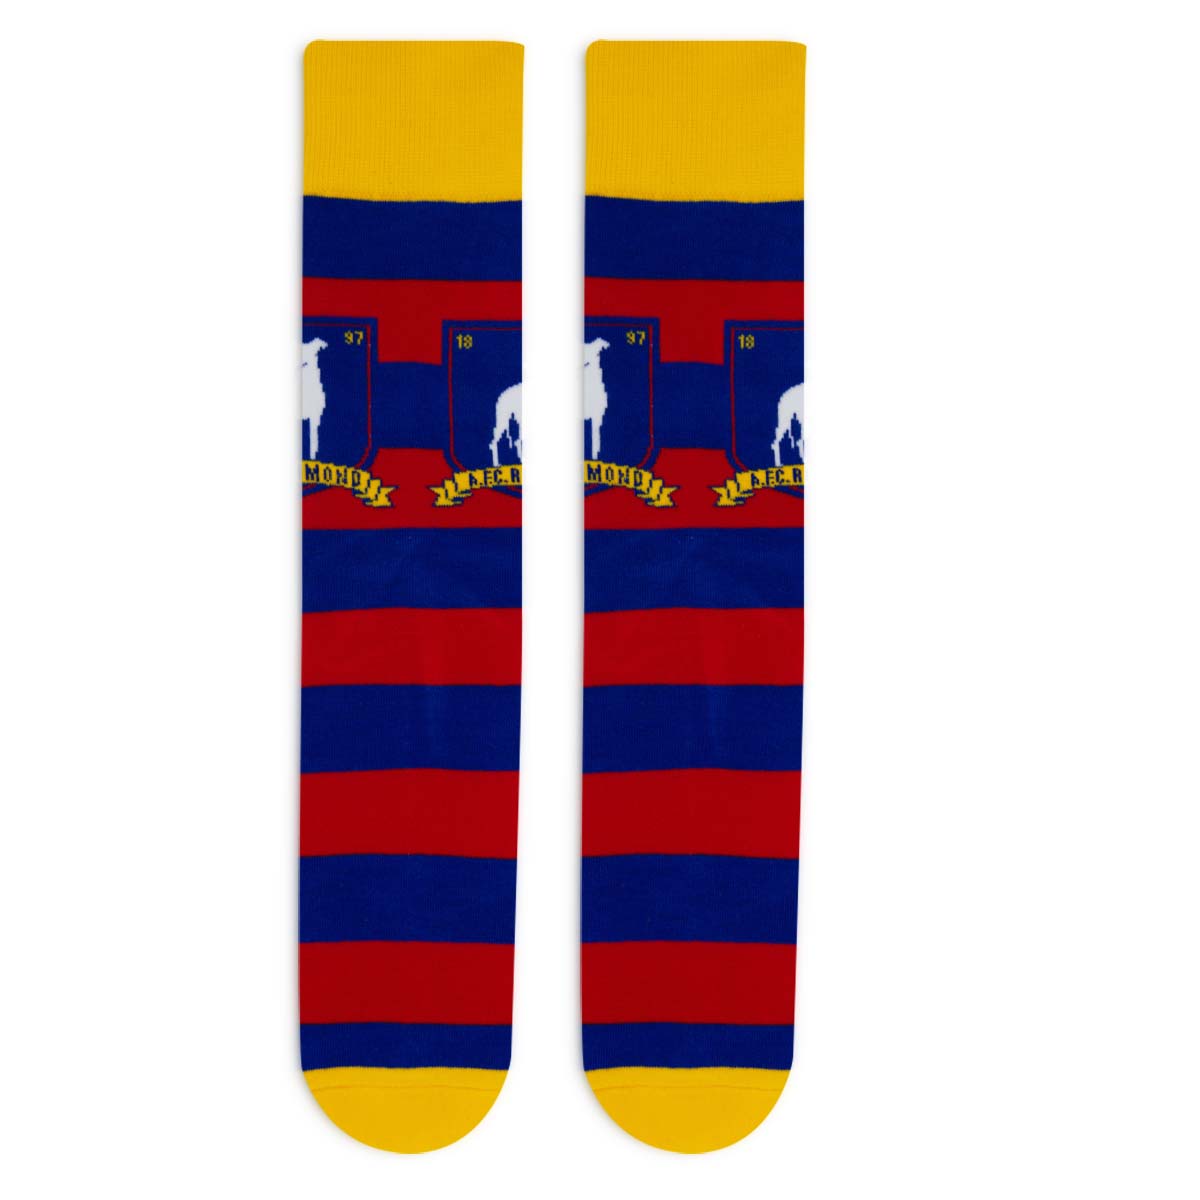 Ted Lasso A.F.C. Richmond Knit Socks